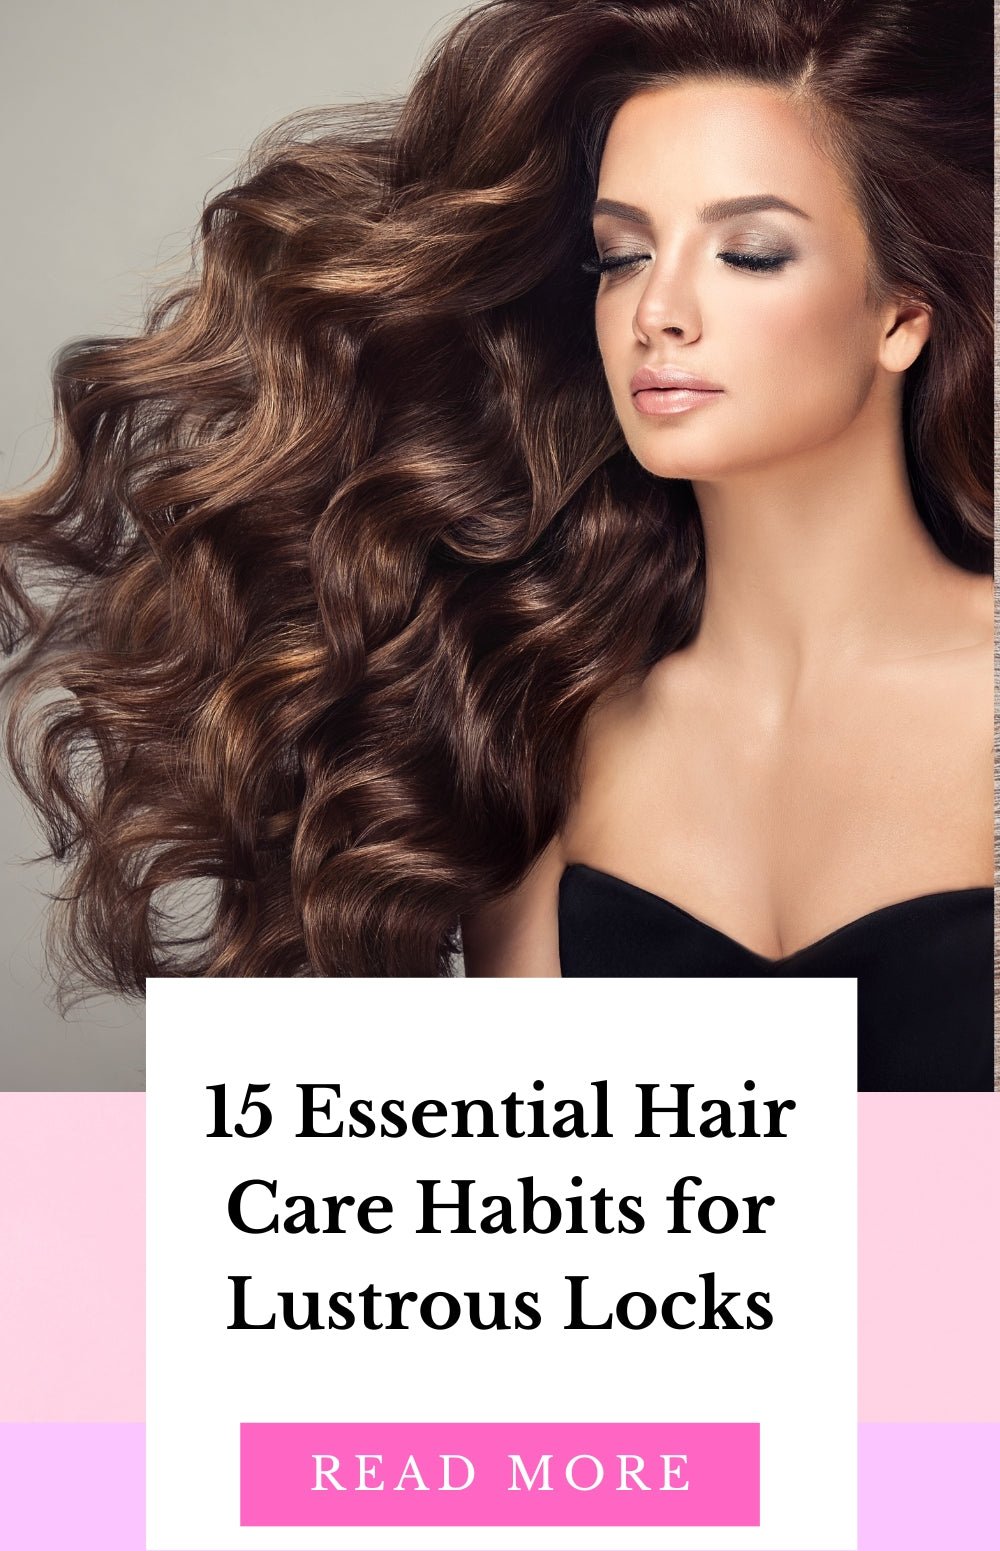 15 Healthy Hair Habits: TGC Boutique's Ultimate Guide - TGC Boutique